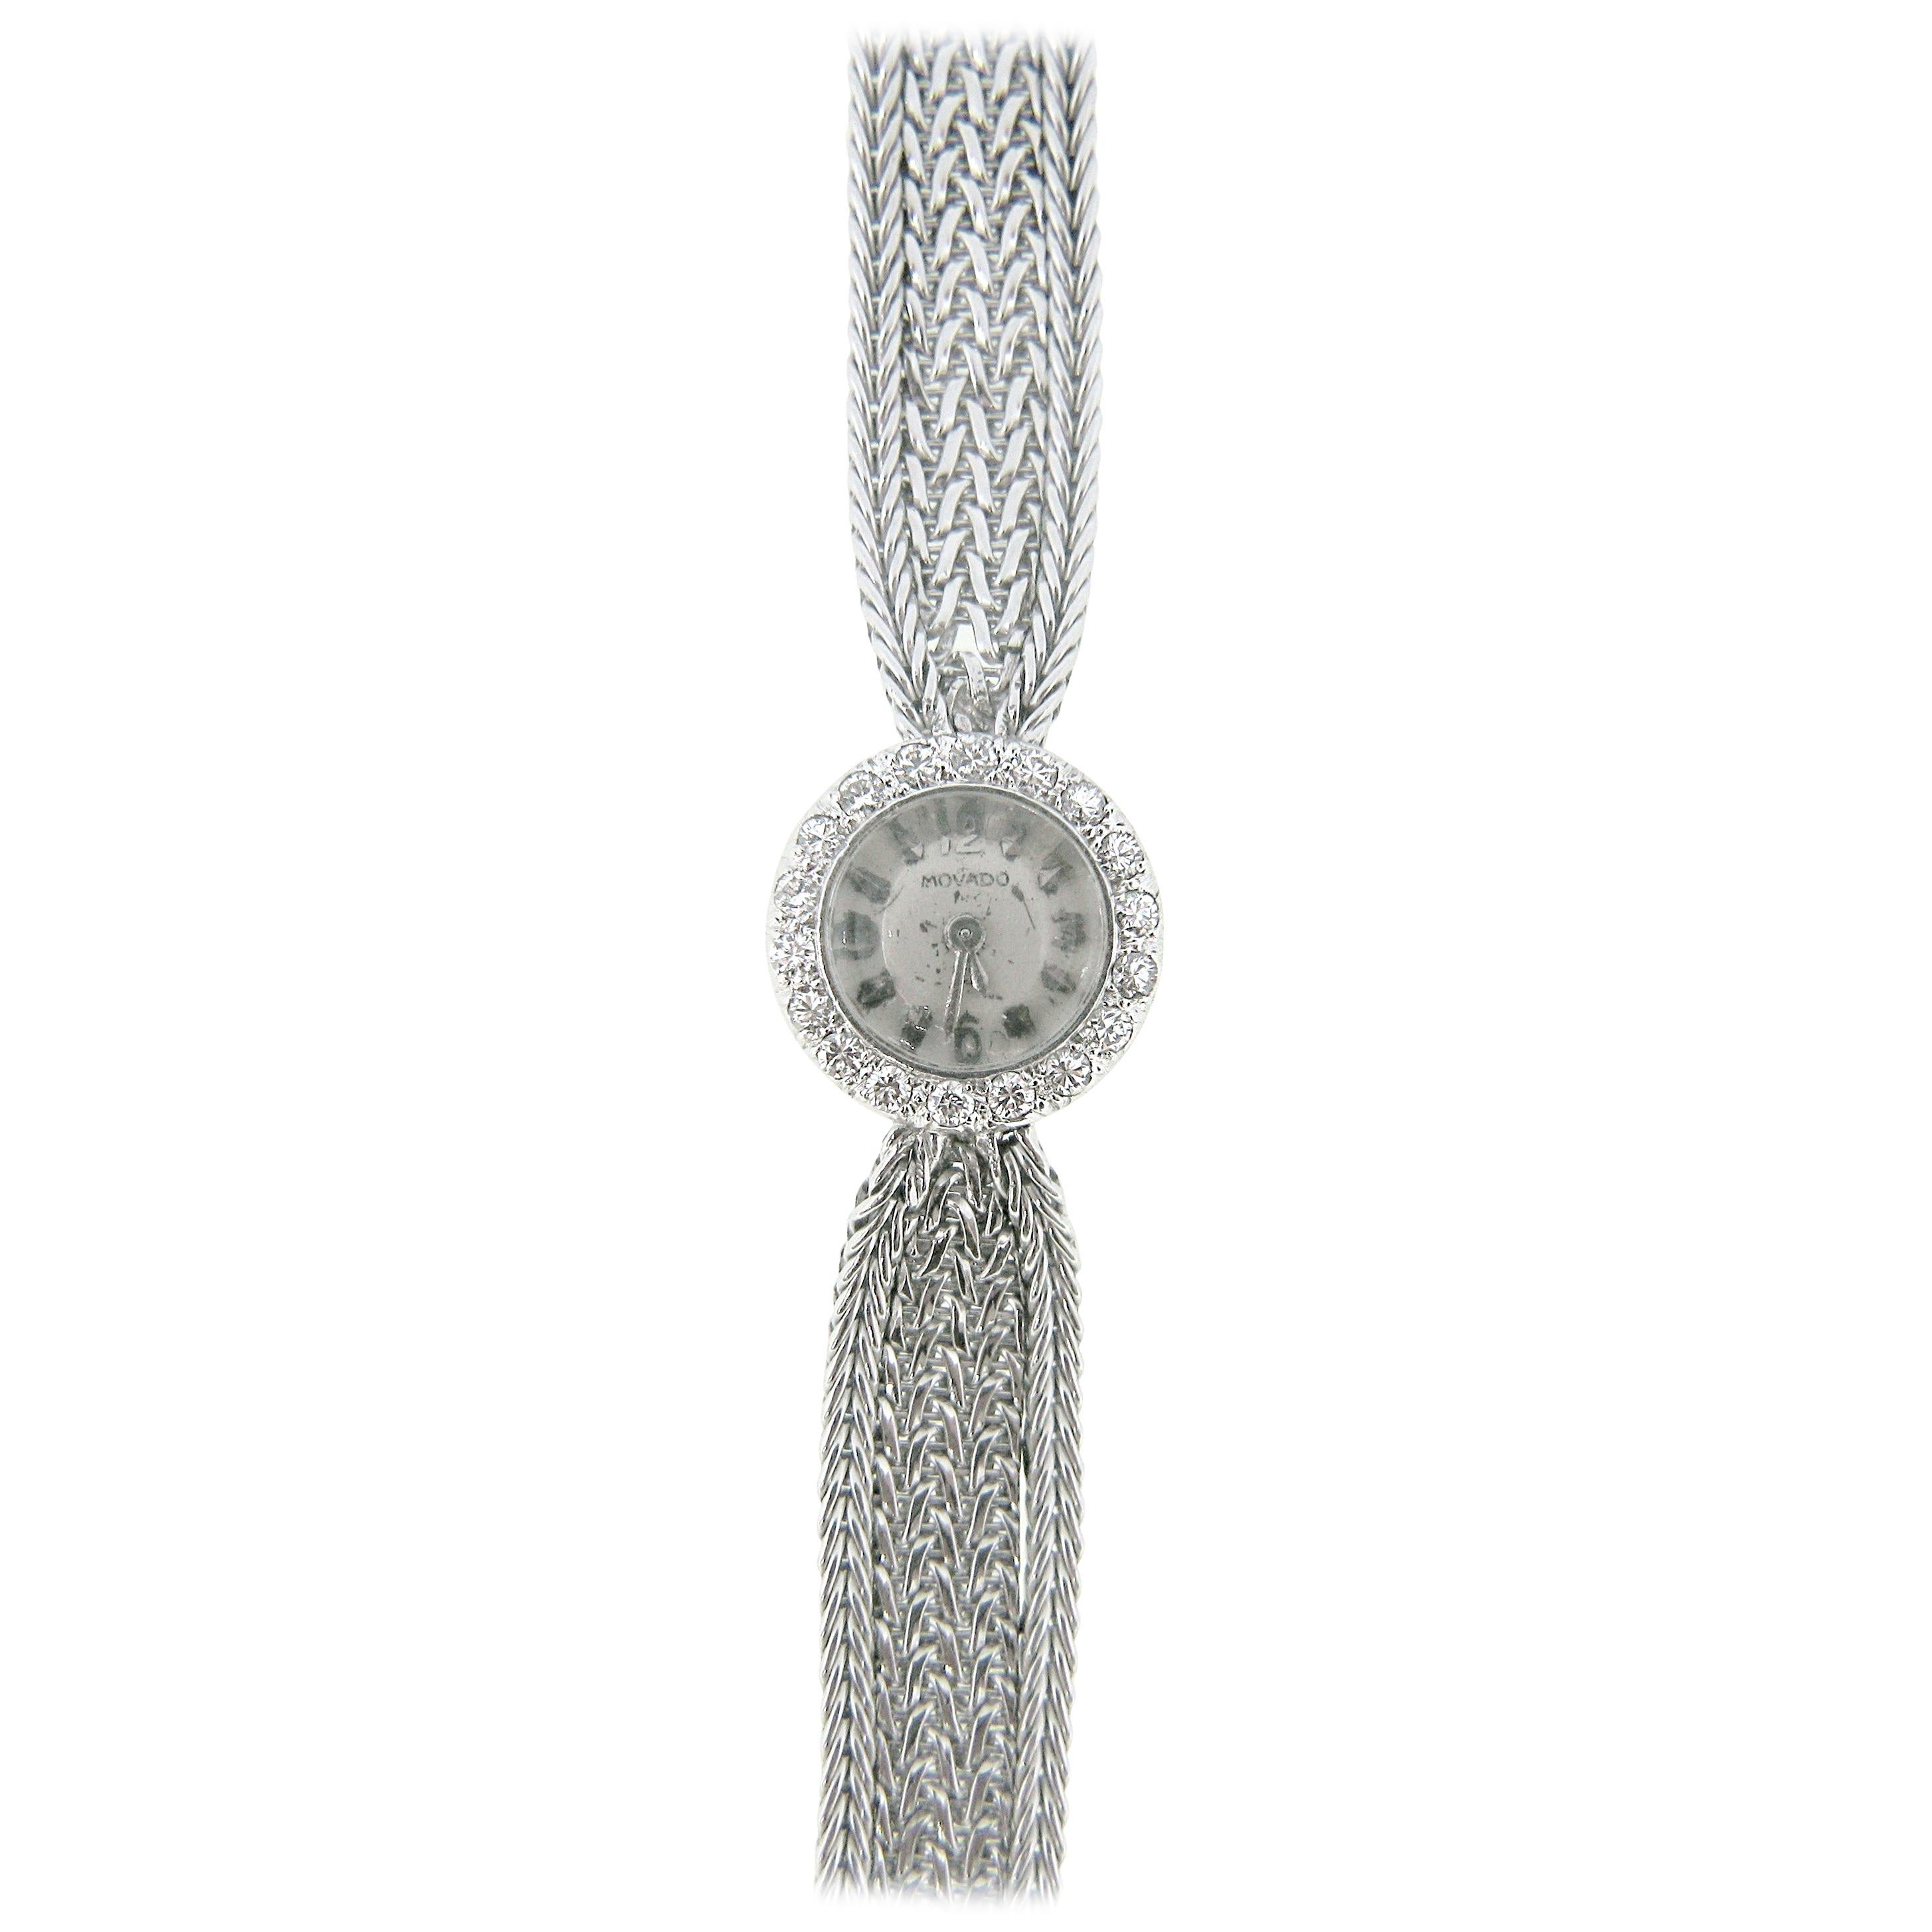 Montre-bracelet vintage Movado pour femme à remontage manuel en or blanc et diamants